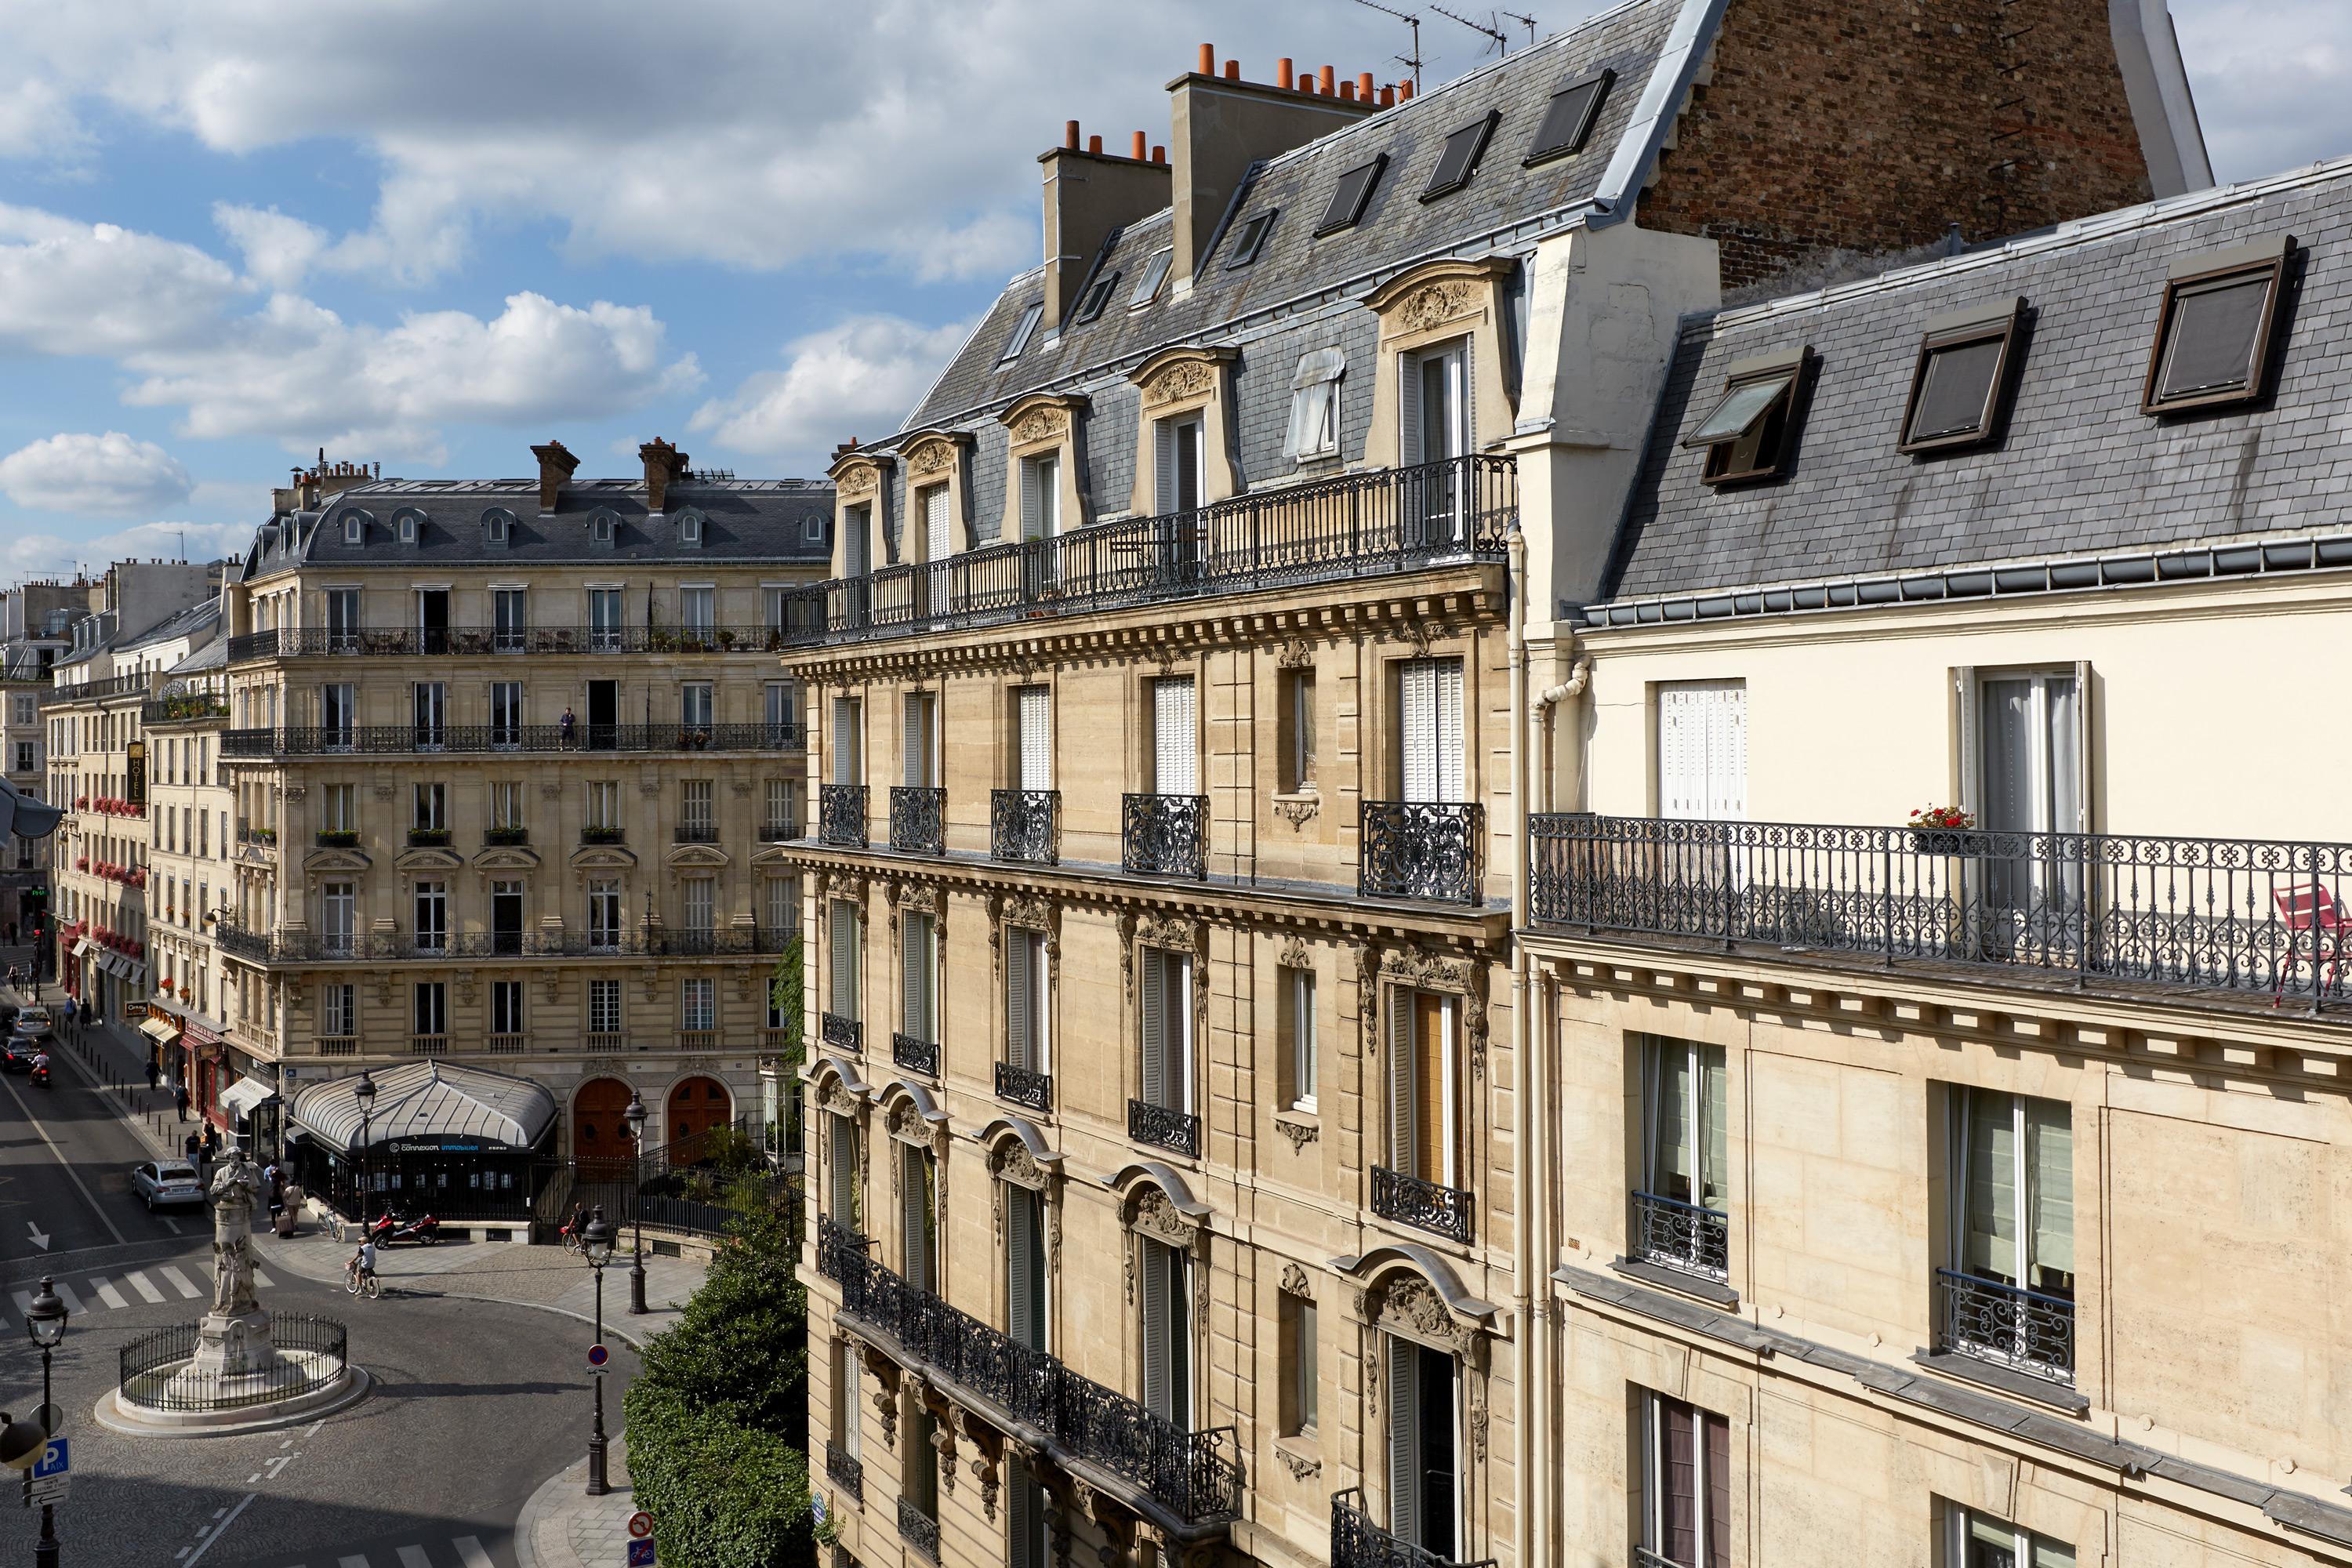 Hotel Antin St Georges Paryż Zewnętrze zdjęcie